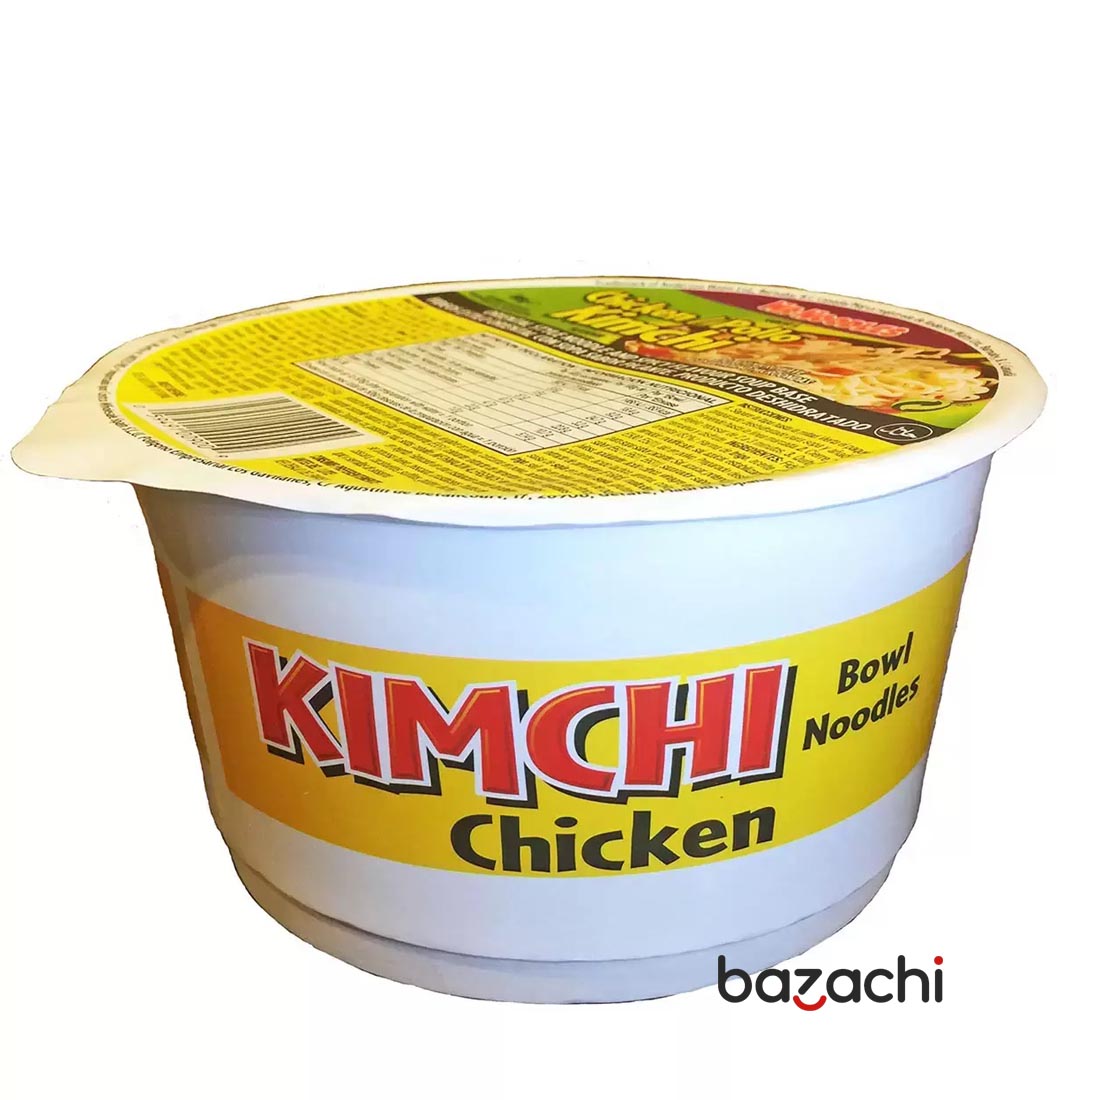 Kimchi Chicken Bowl Noodle 86g - Halal & Vegan